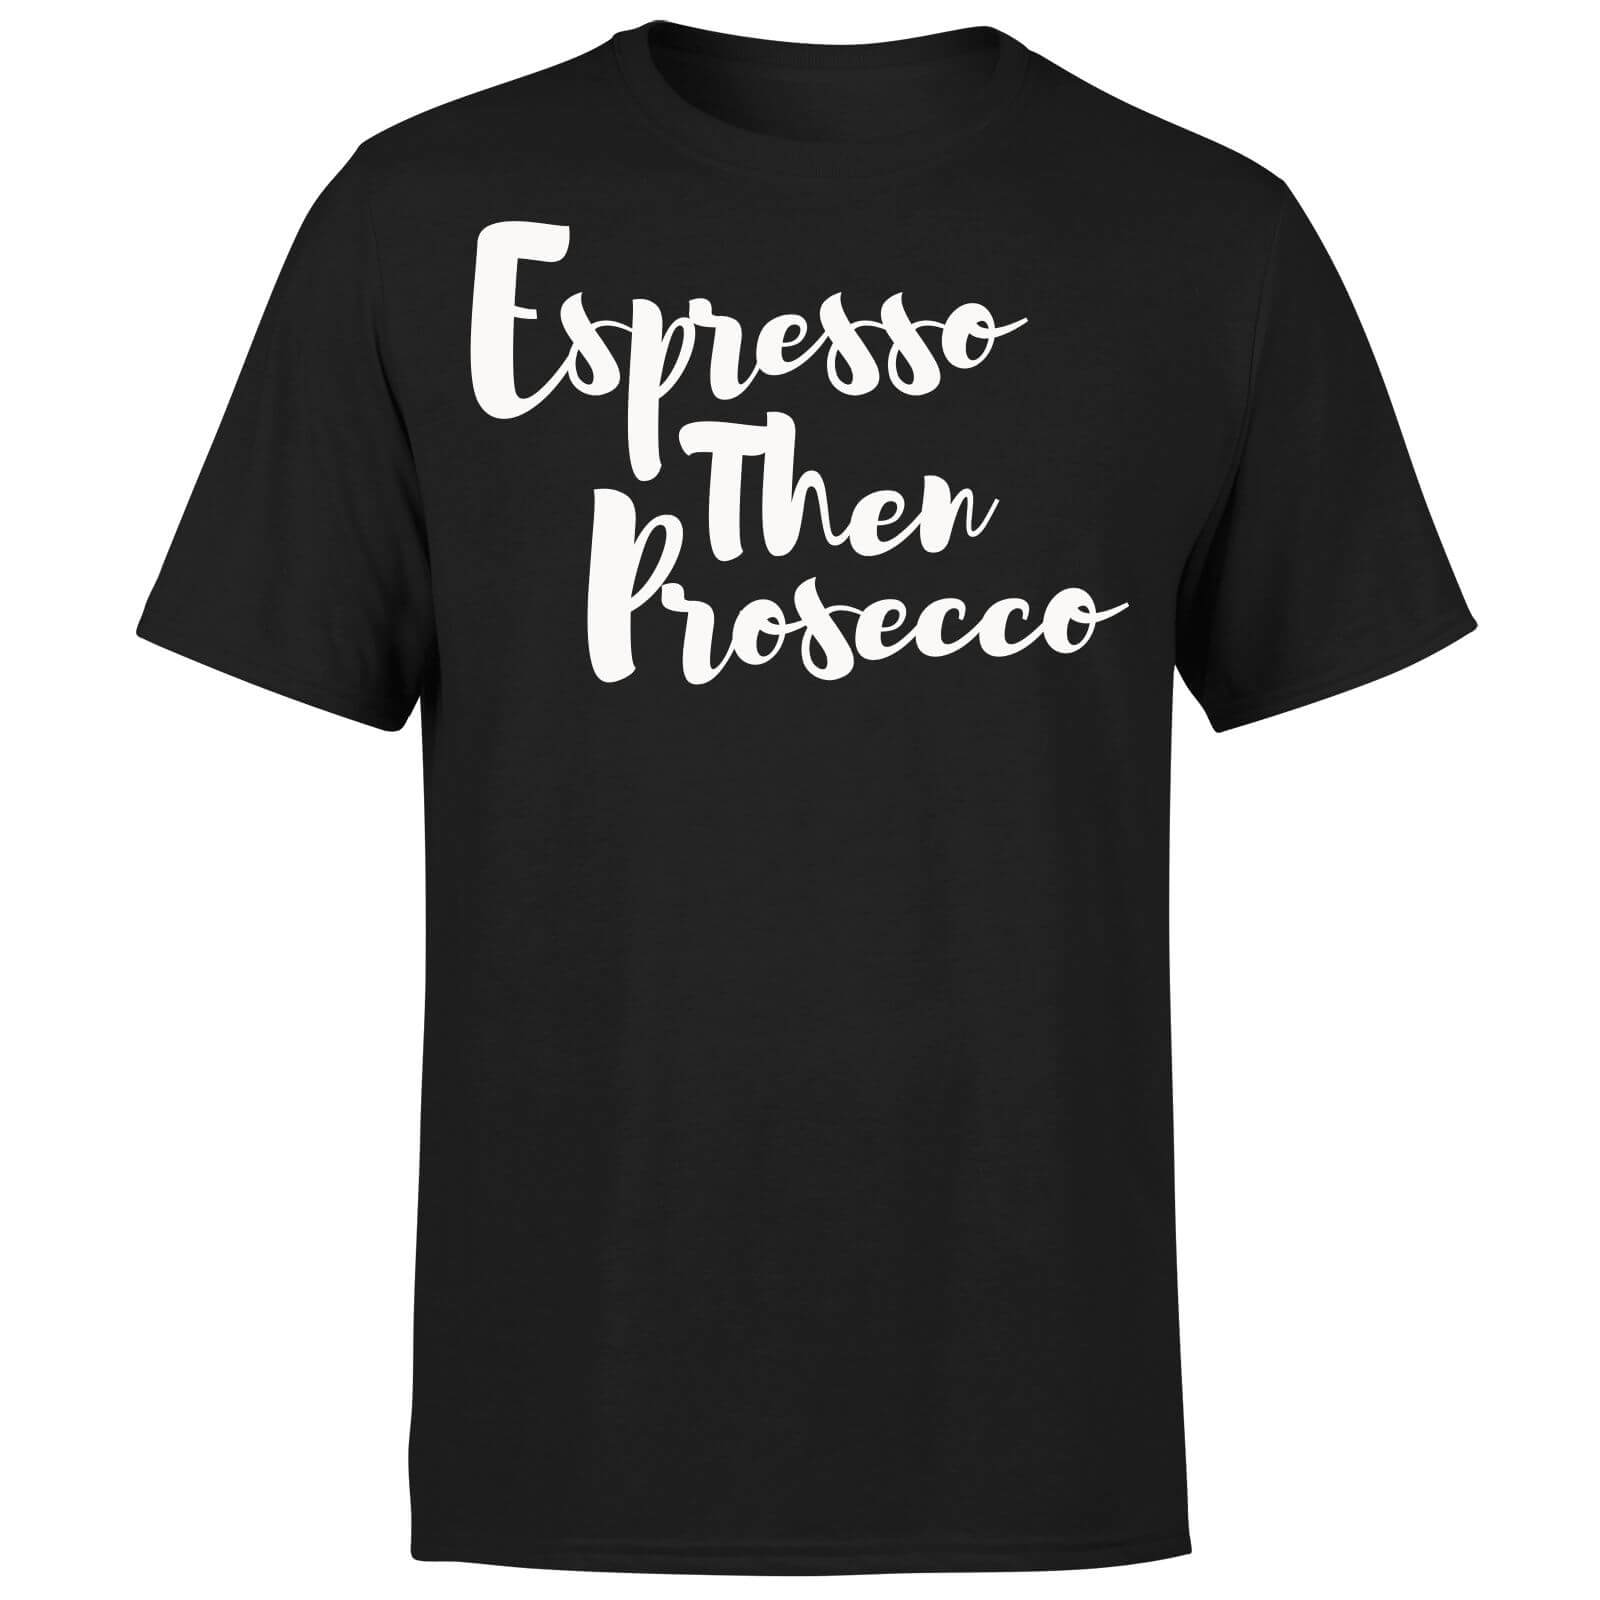 Espresso then Prosecco T-Shirt - Black - S - Black